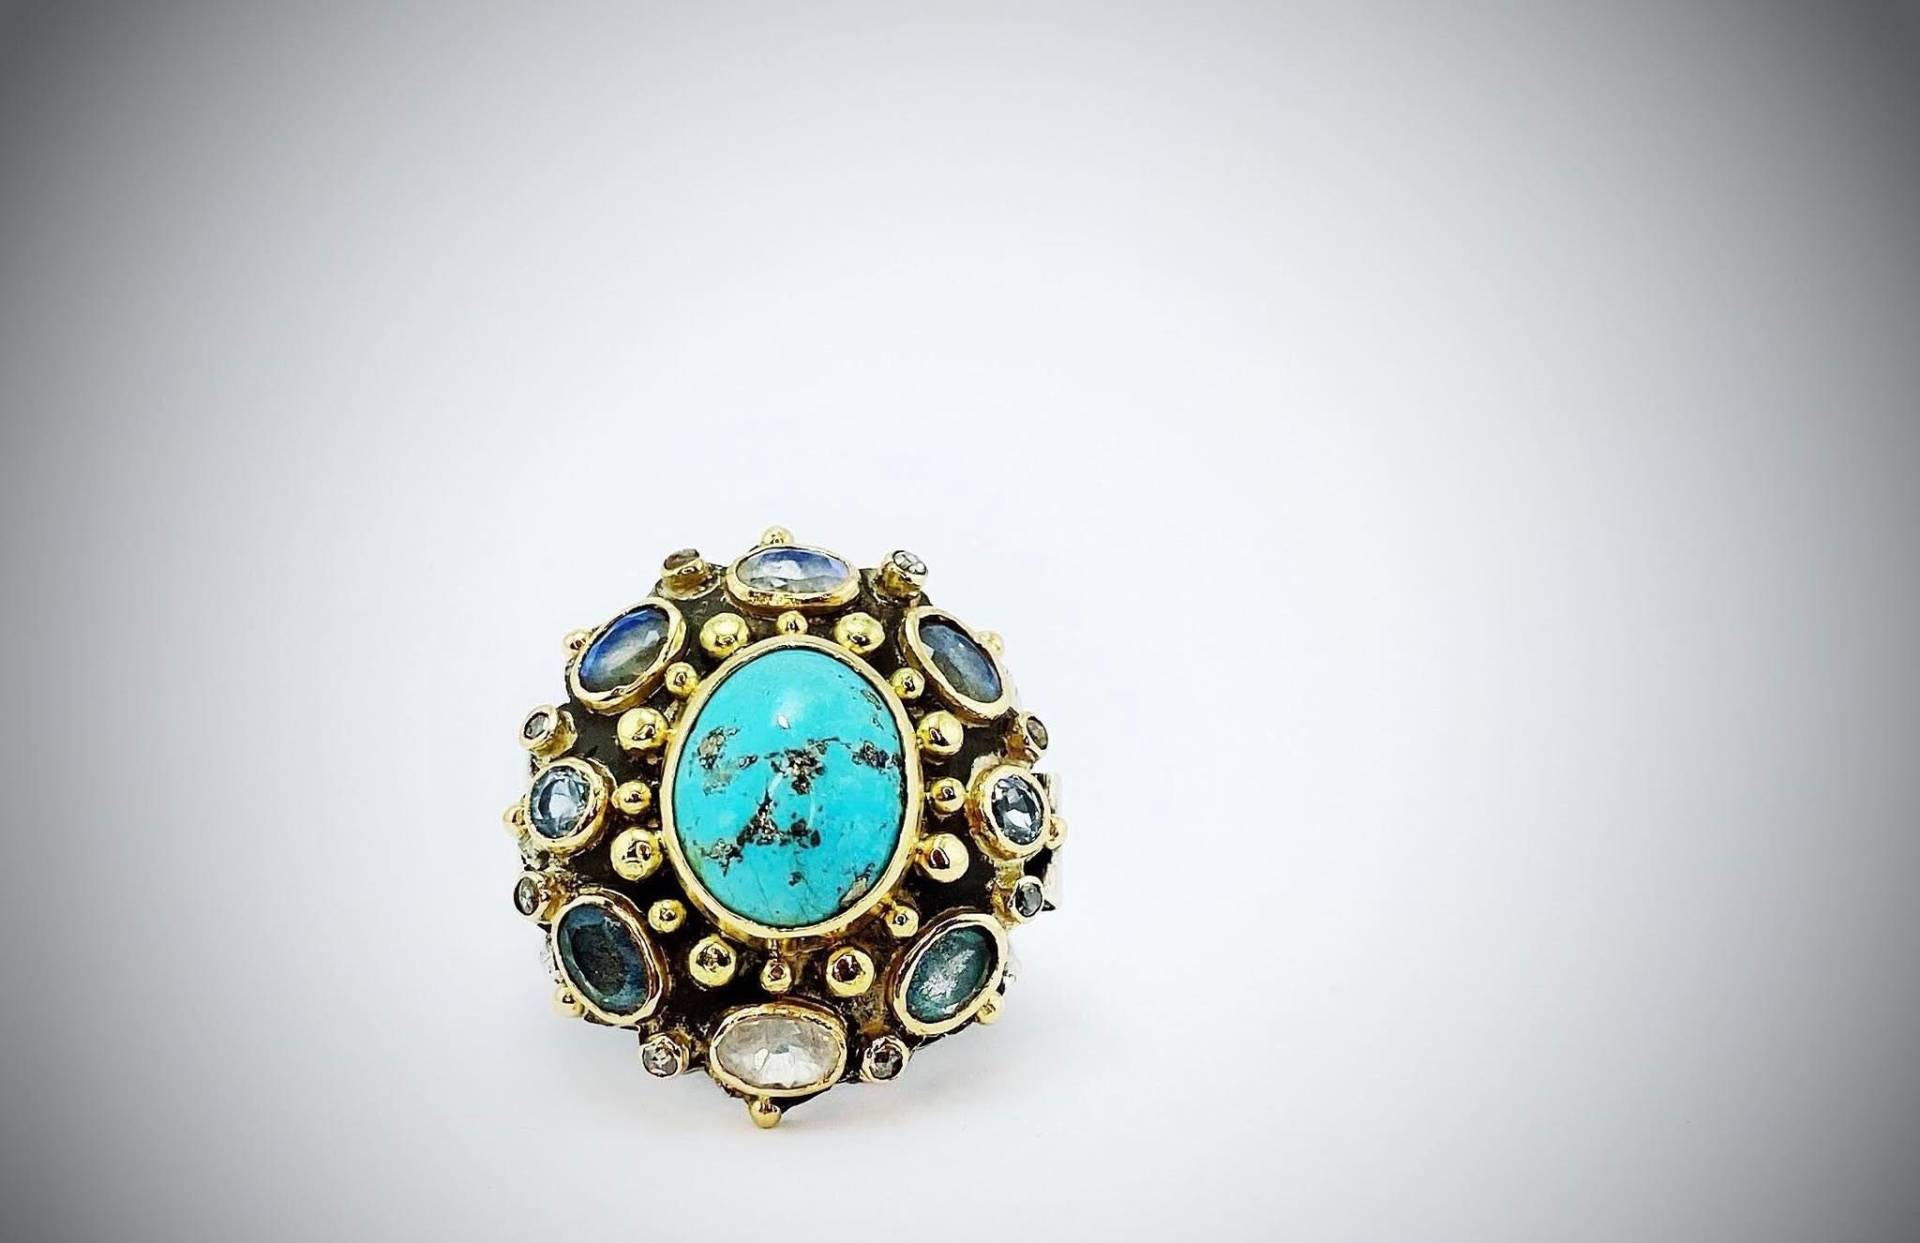 Rose Cut Diamant Ring, Türkis Silber Mondstein 18K Gold Inlays Labradorit Statement Aquamarin Ring von ArtissimoArtGallery